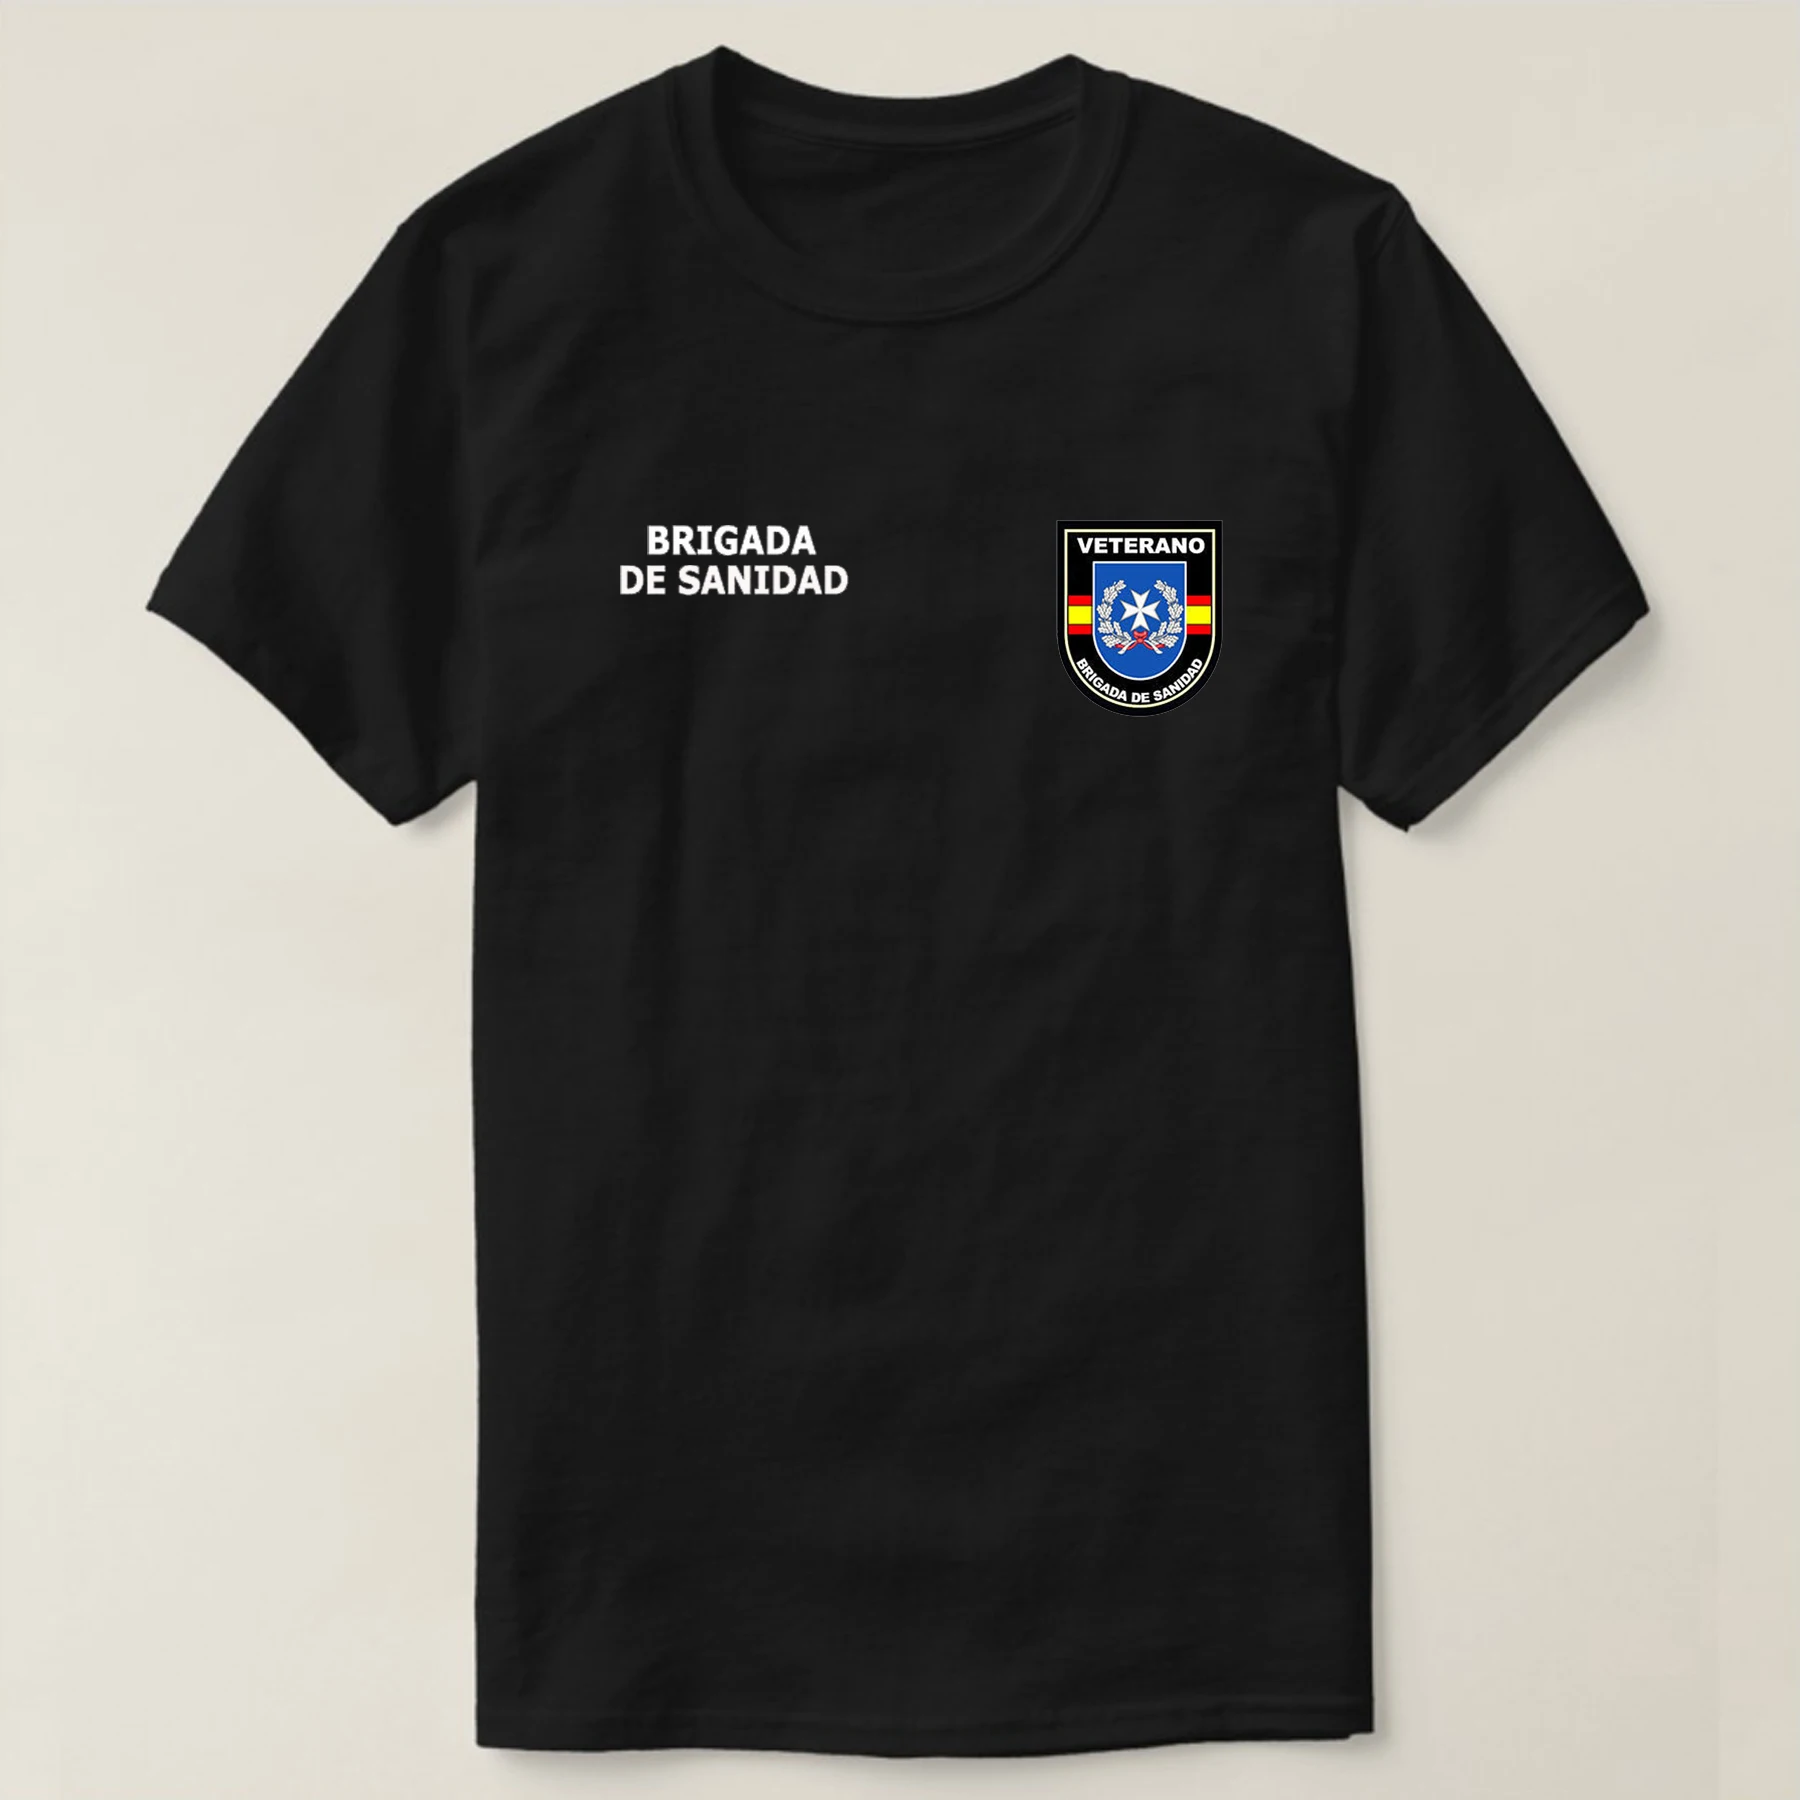 Camiseta Veteranos- Brigada De higiene. Camiseta Ejército Español. 100% Algodón.